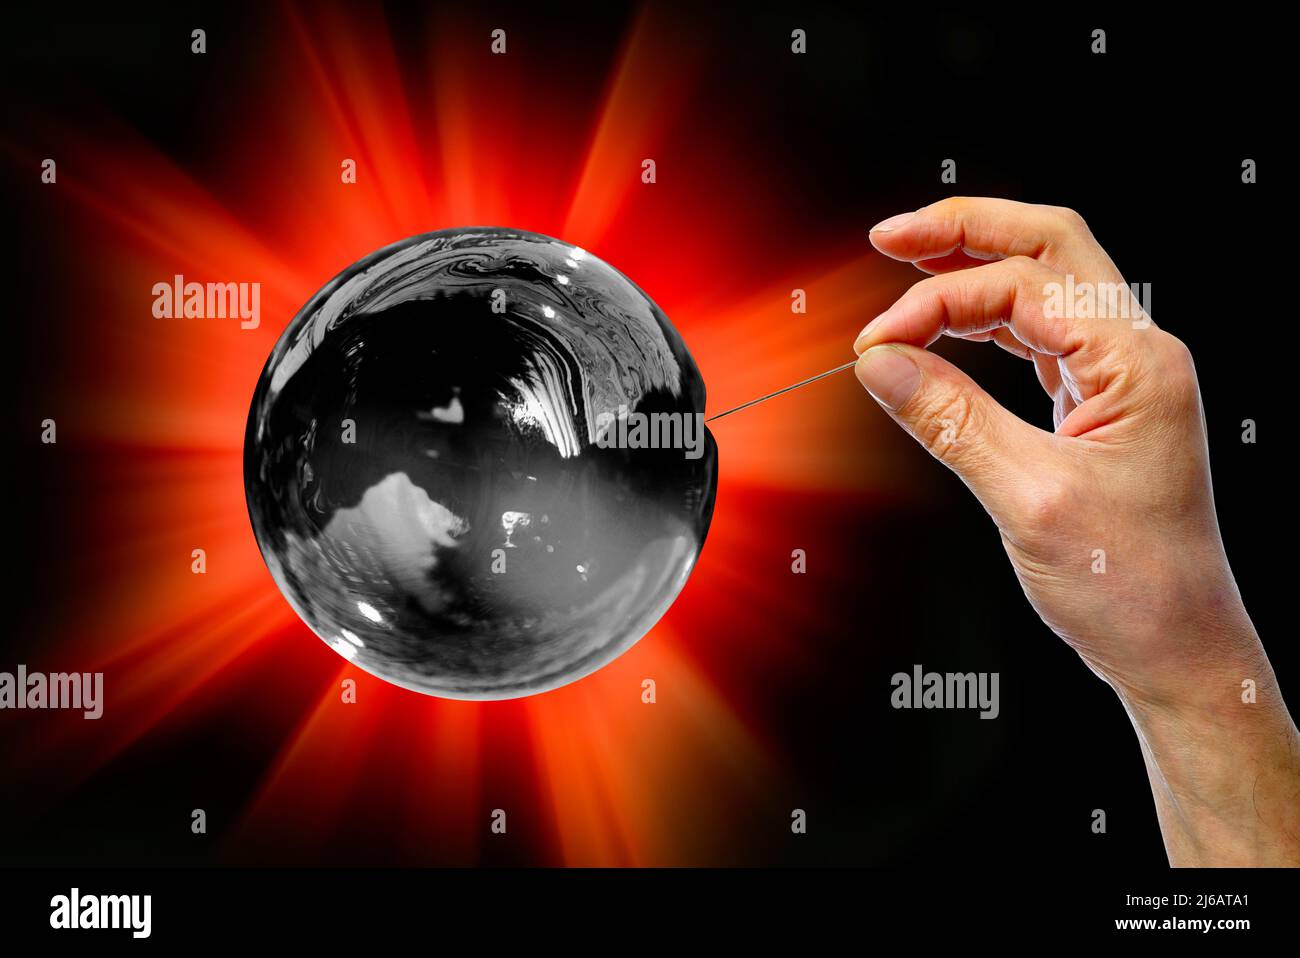 Carbon bubble bursting, conceptual composite image Stock Photo